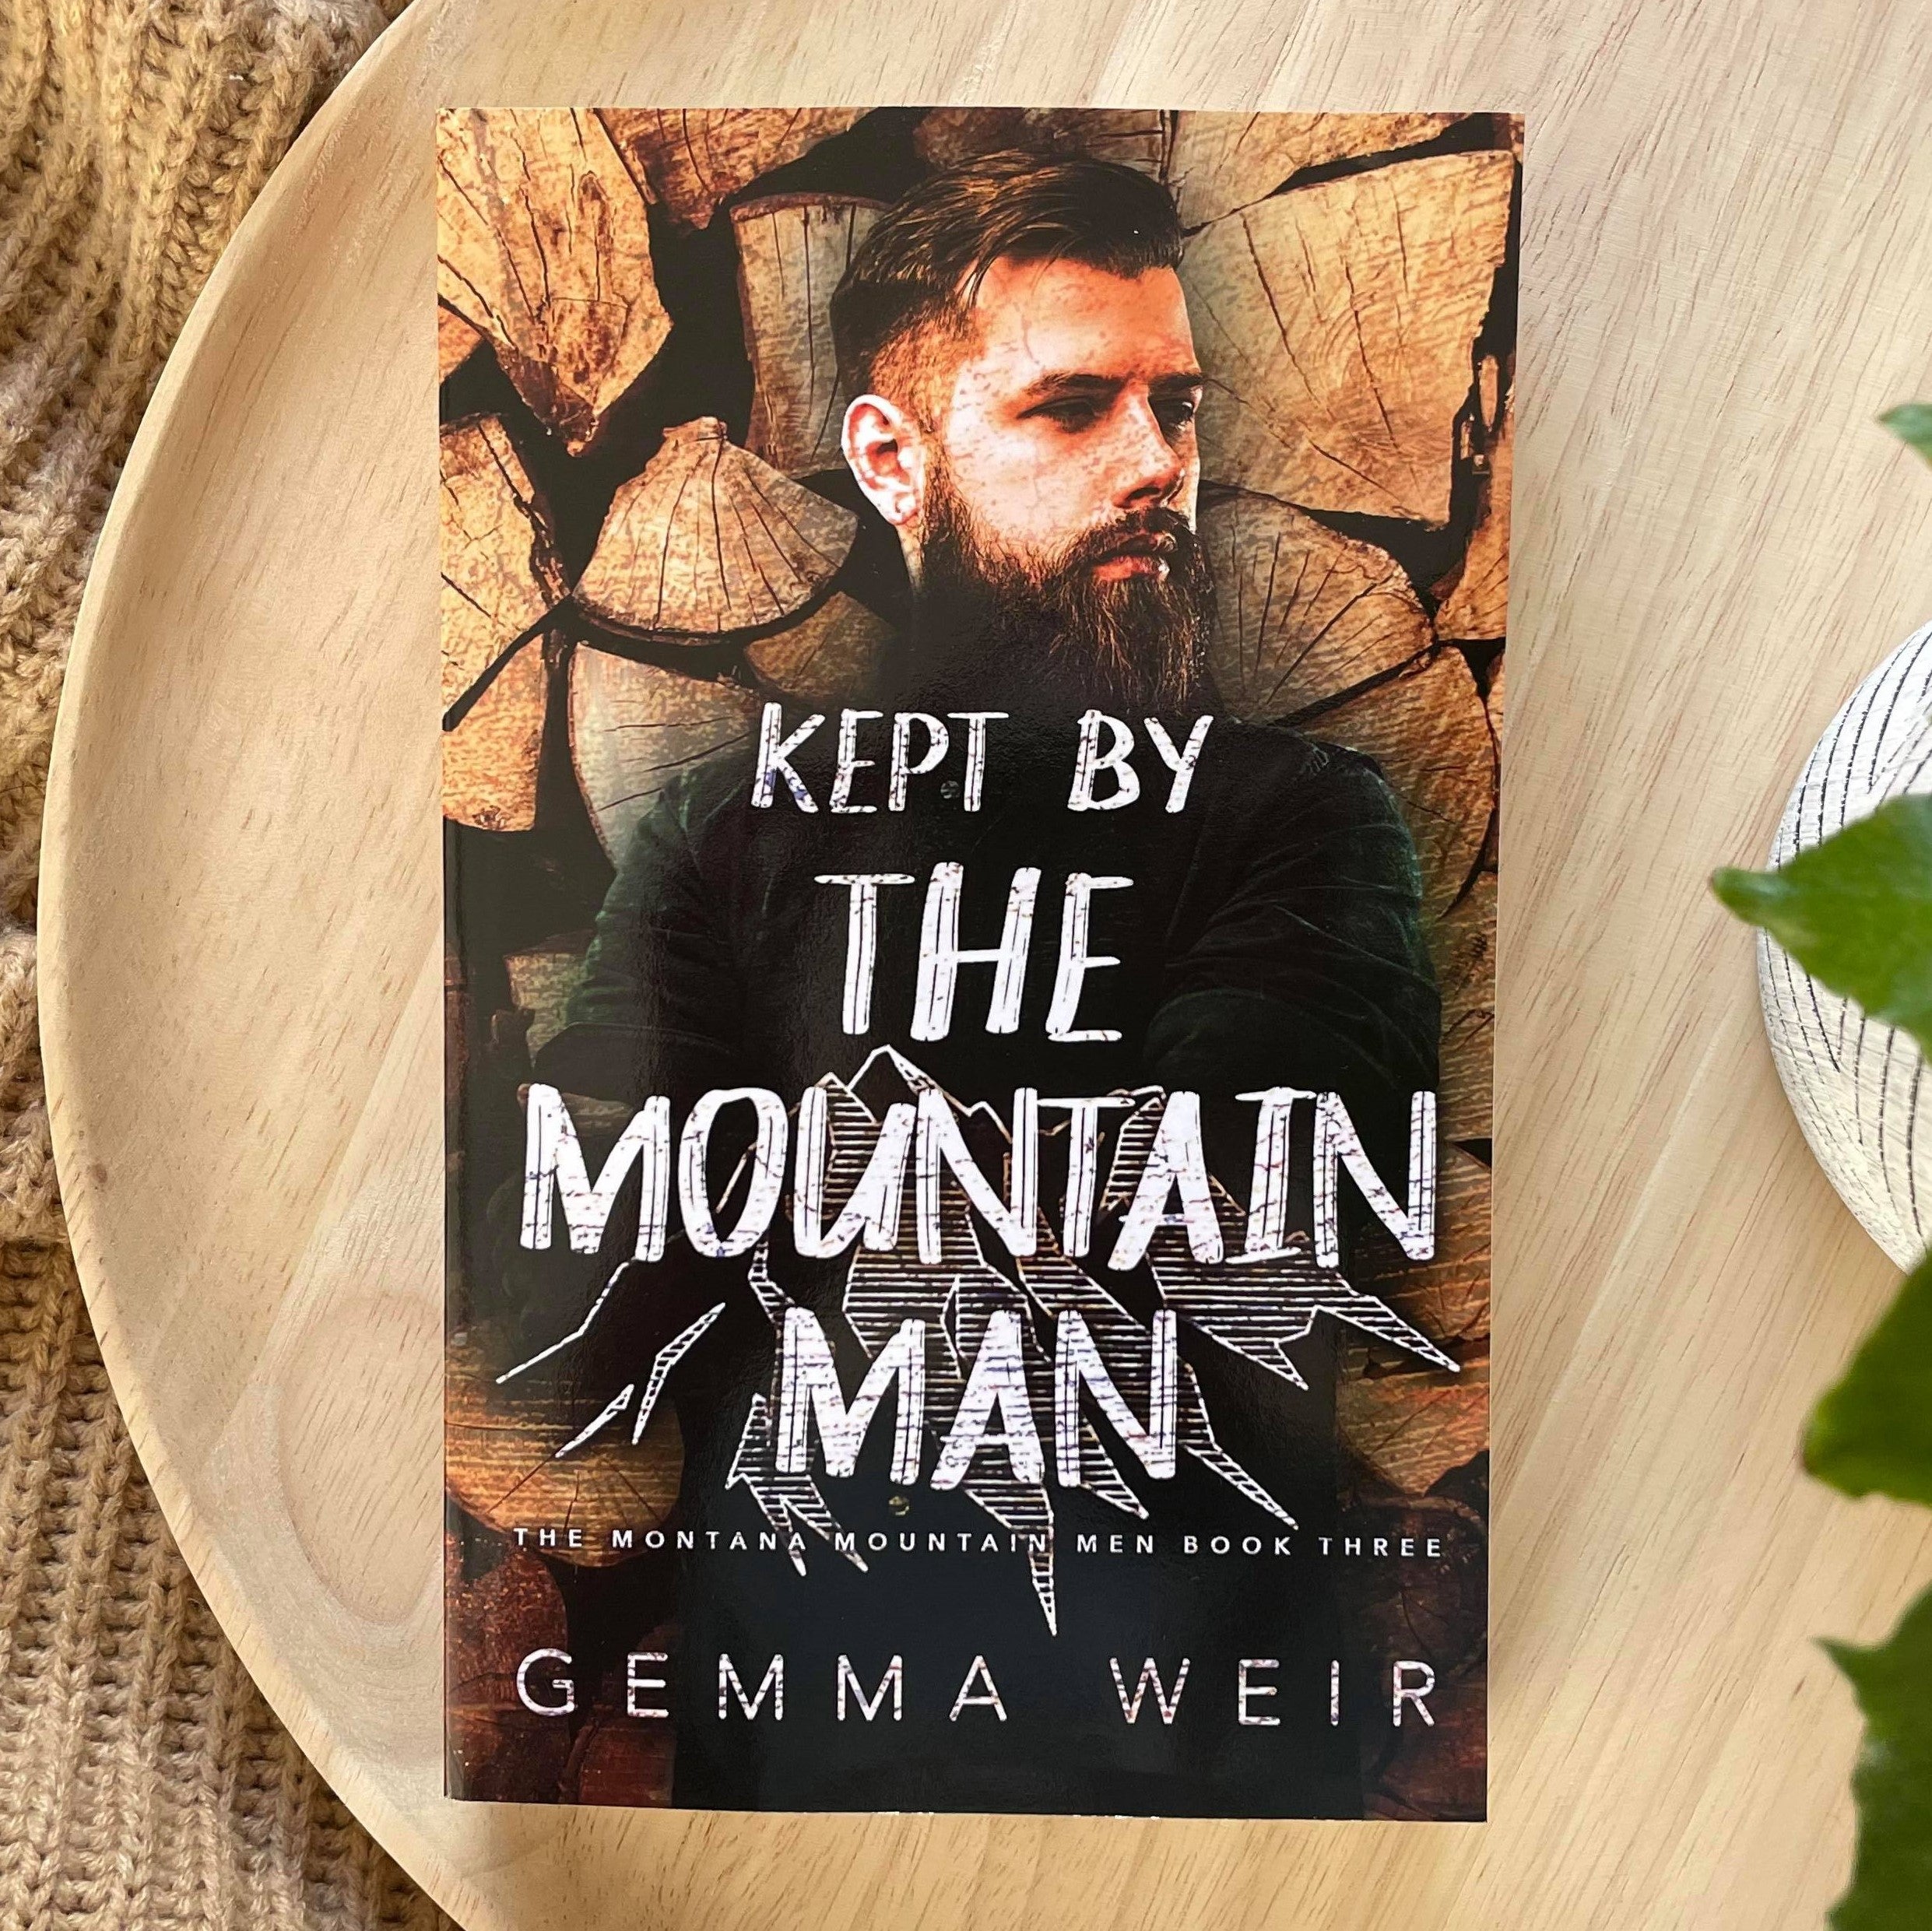 Montana Mountain Man series by Gemma Weir